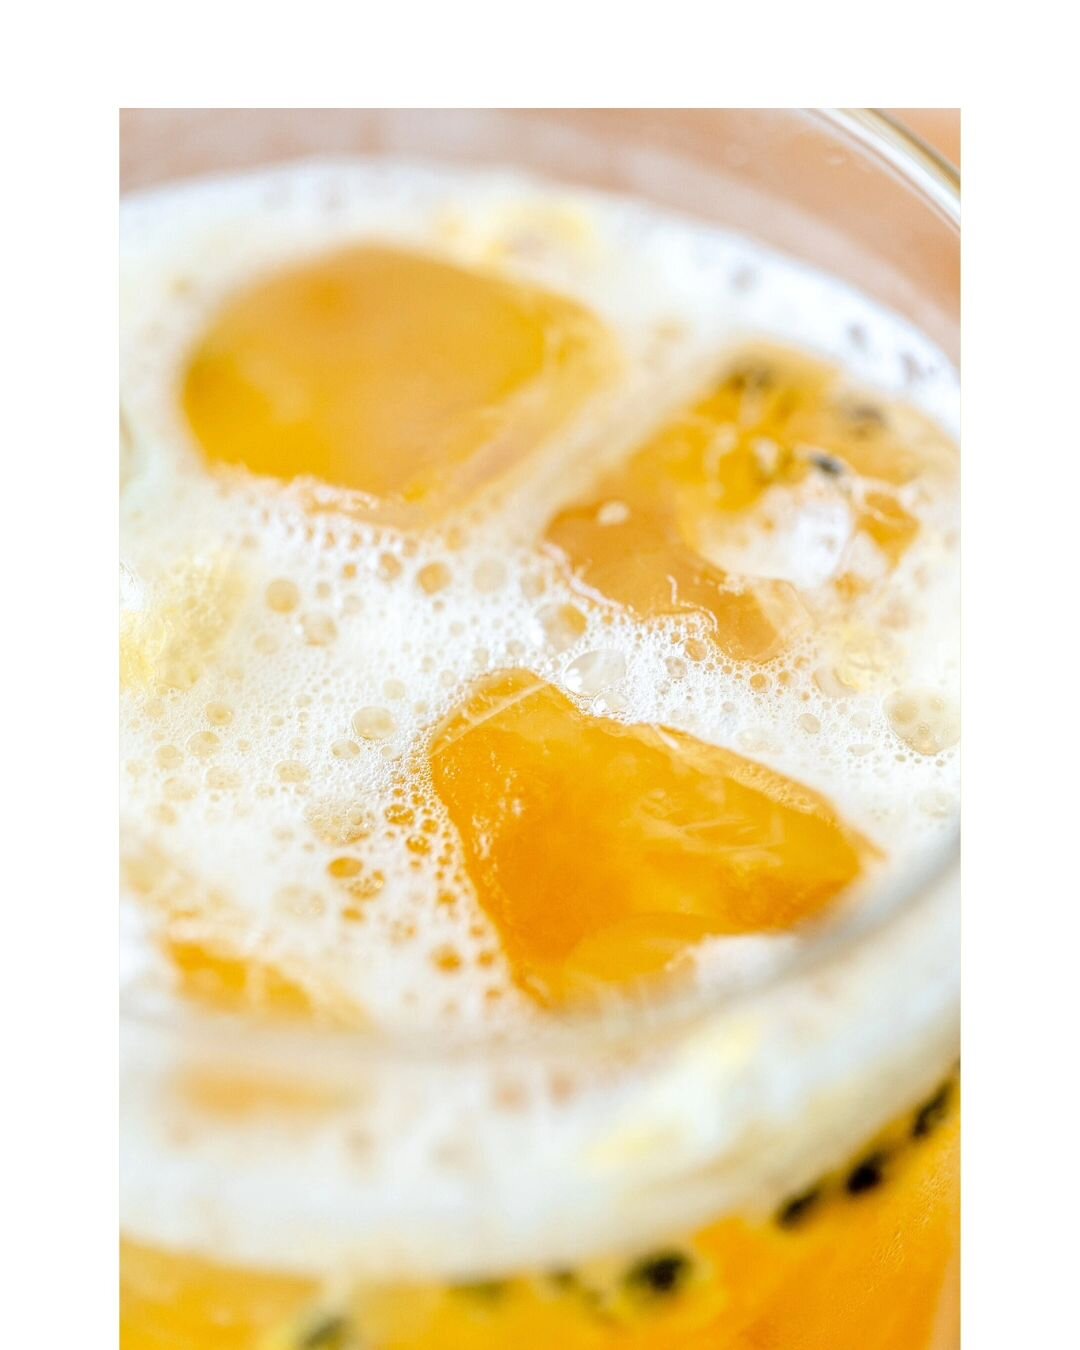 Vier het zonnige weekend ☀️

Deze ijsthee met passievrucht, citroen siroop en oolong thee is echt zomer in een glas. Behalve dan dat het ijskoud is in plaats van warm.

#zomerdrankje #restaurantfotografie